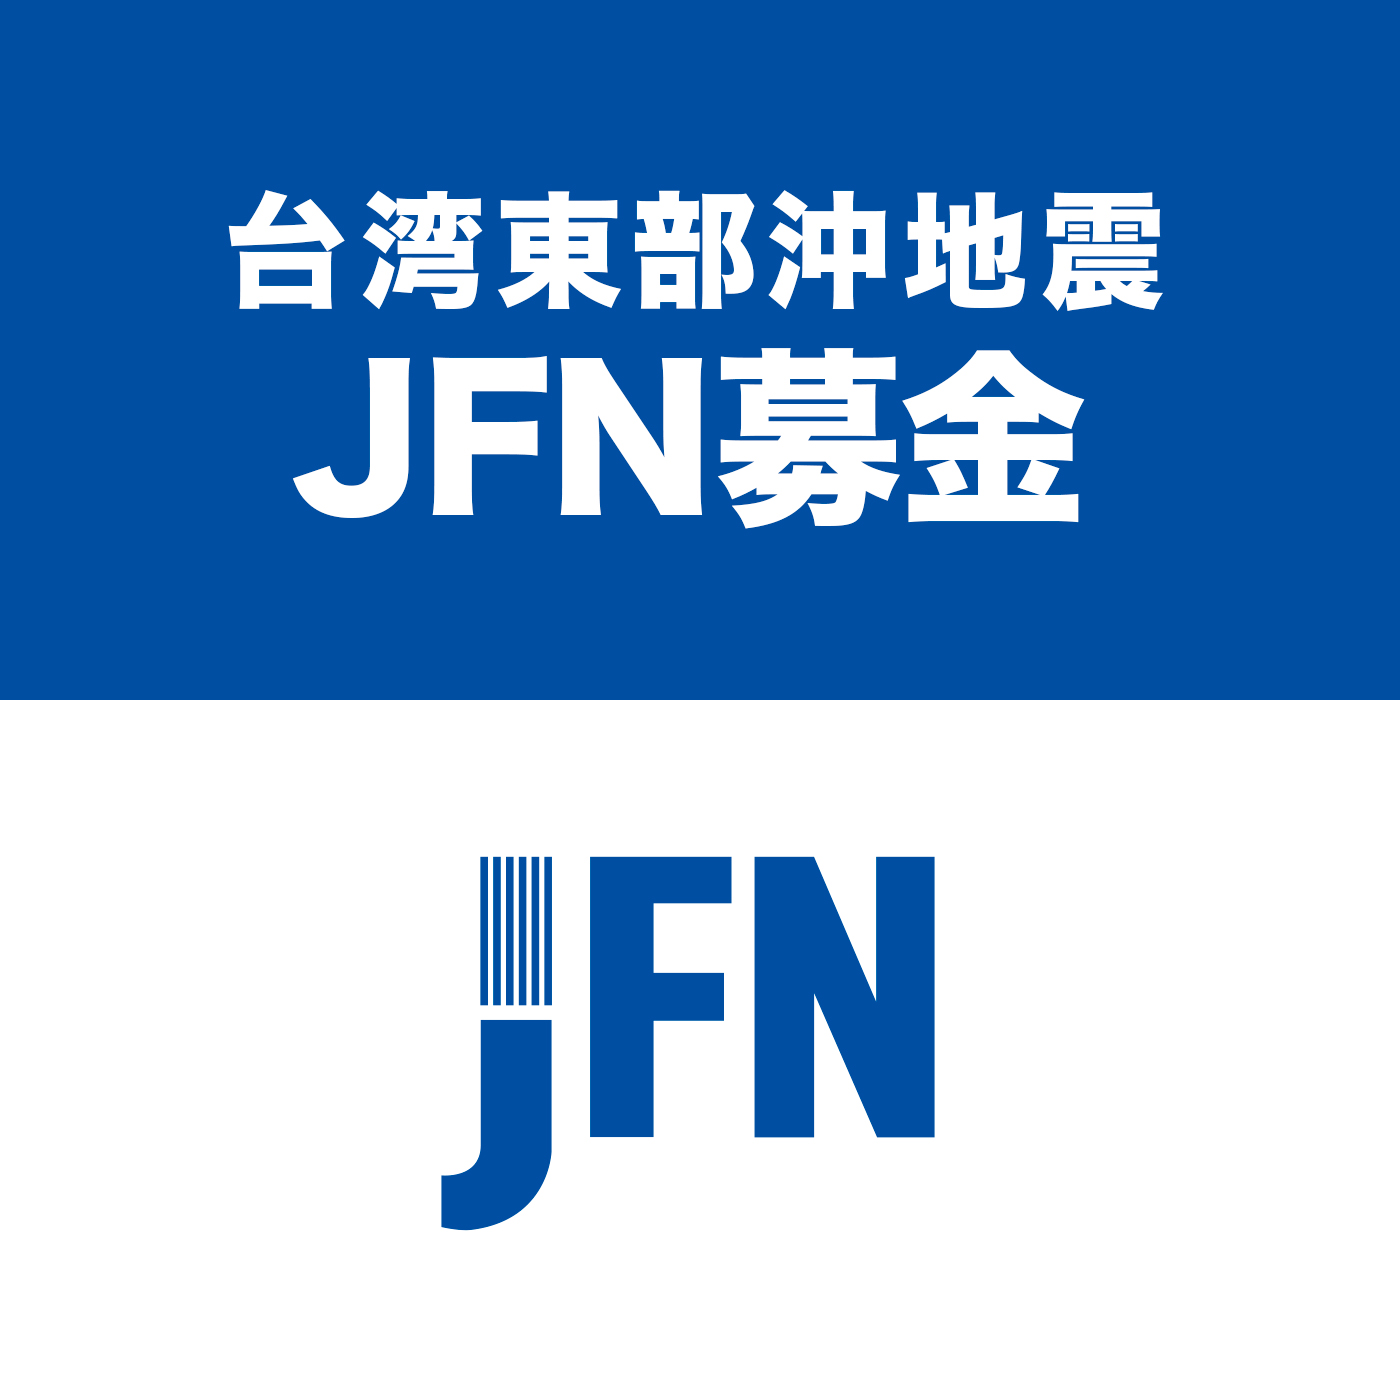 「台湾東部沖 JFN募金」にご協力いただき誠にありがとうございました